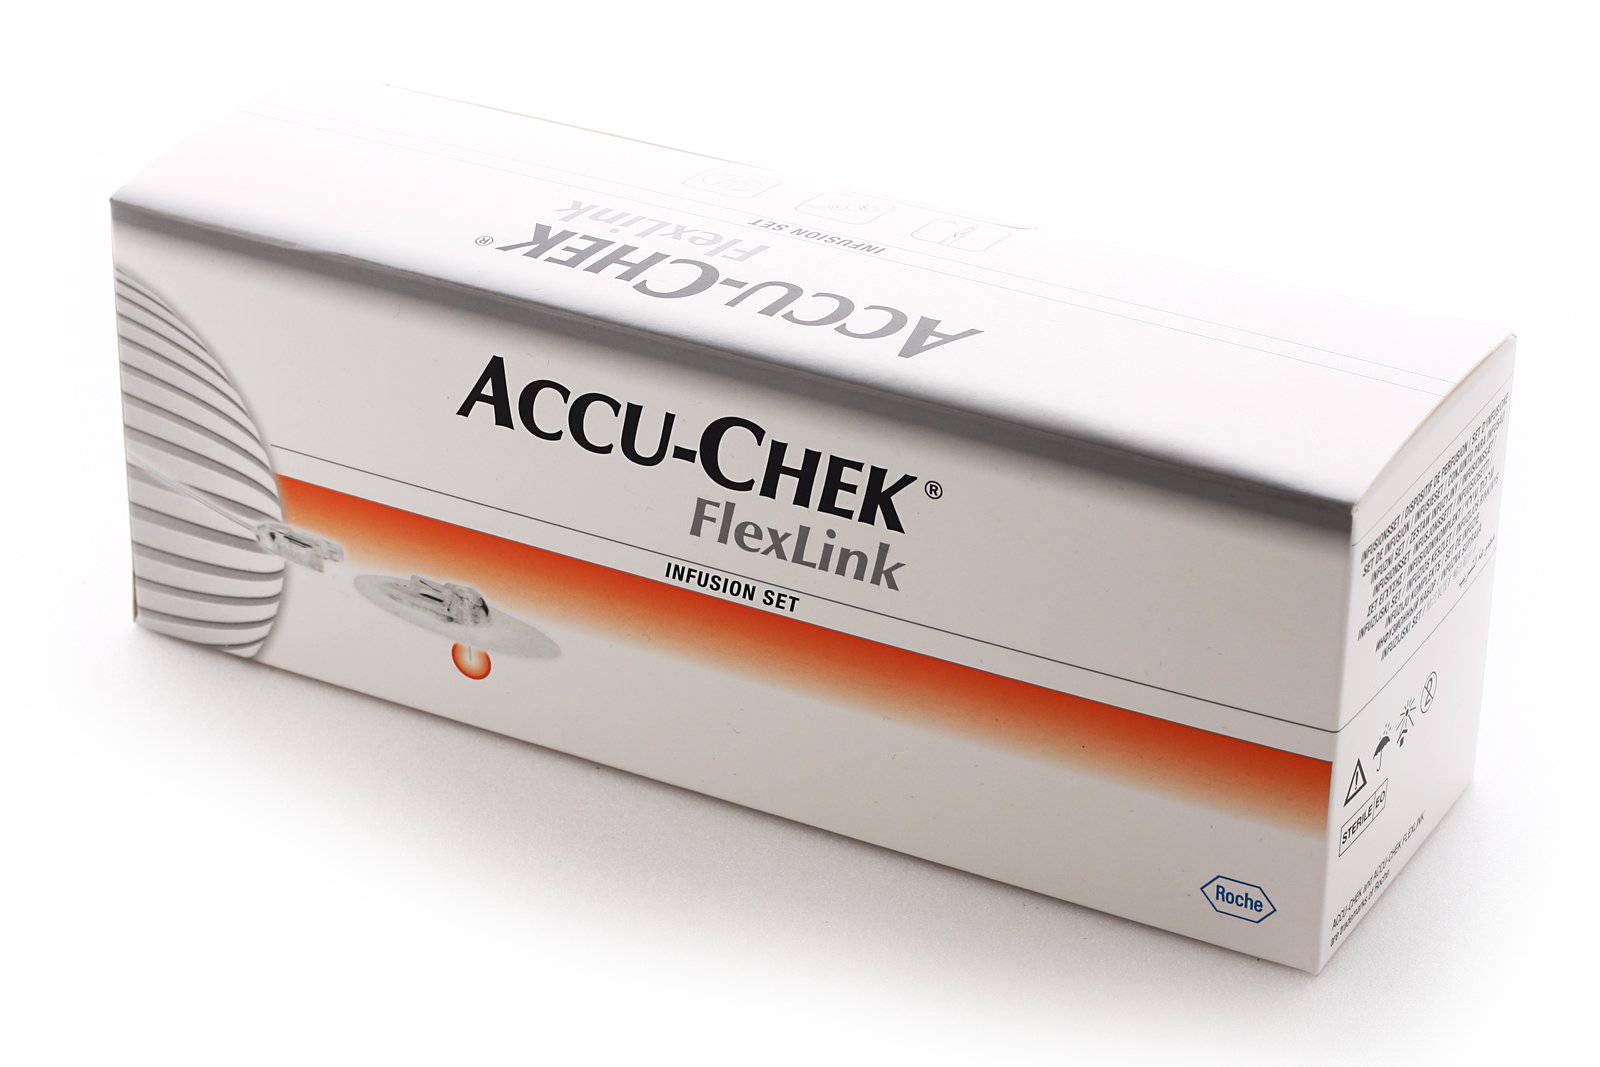 Accu-Chek FlexLink Infusion Set 10 Pack - Omninela Medical